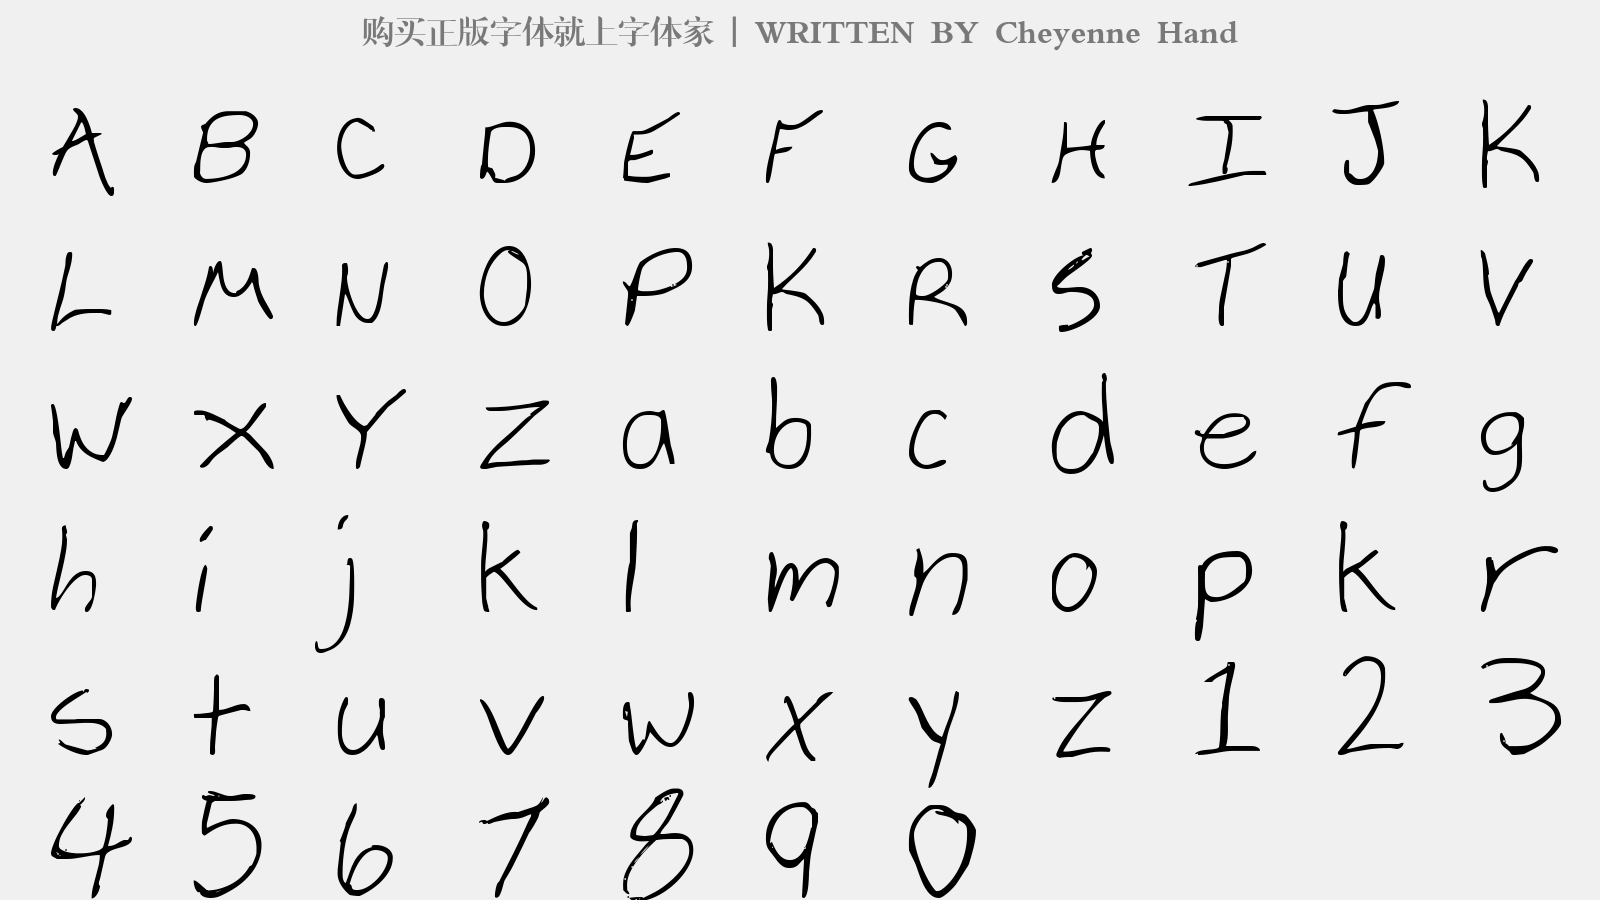 Cheyenne Hand - 大写字母/小写字母/数字